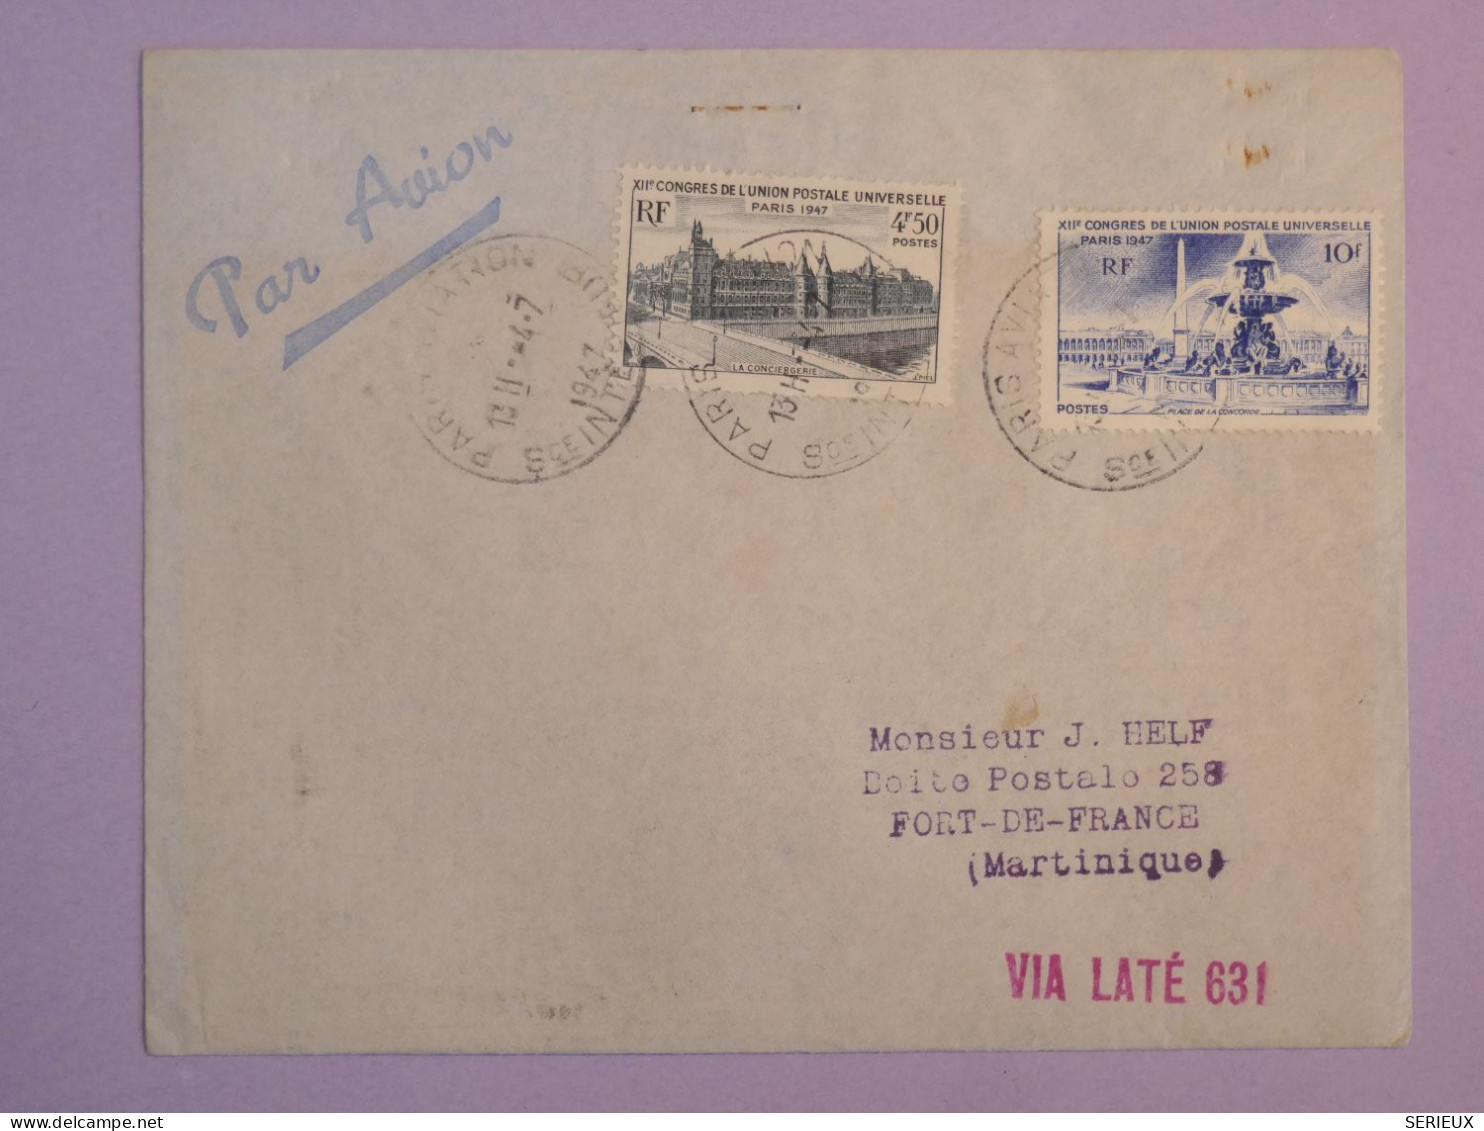 BS17  FRANCE  BELLE LETTRE 1947 1ER VOL  PARIS MARTINIQUE FORT DE FRANCE+ VIGNETTE   + AFFR. PLAISANT++ ++ - First Flight Covers